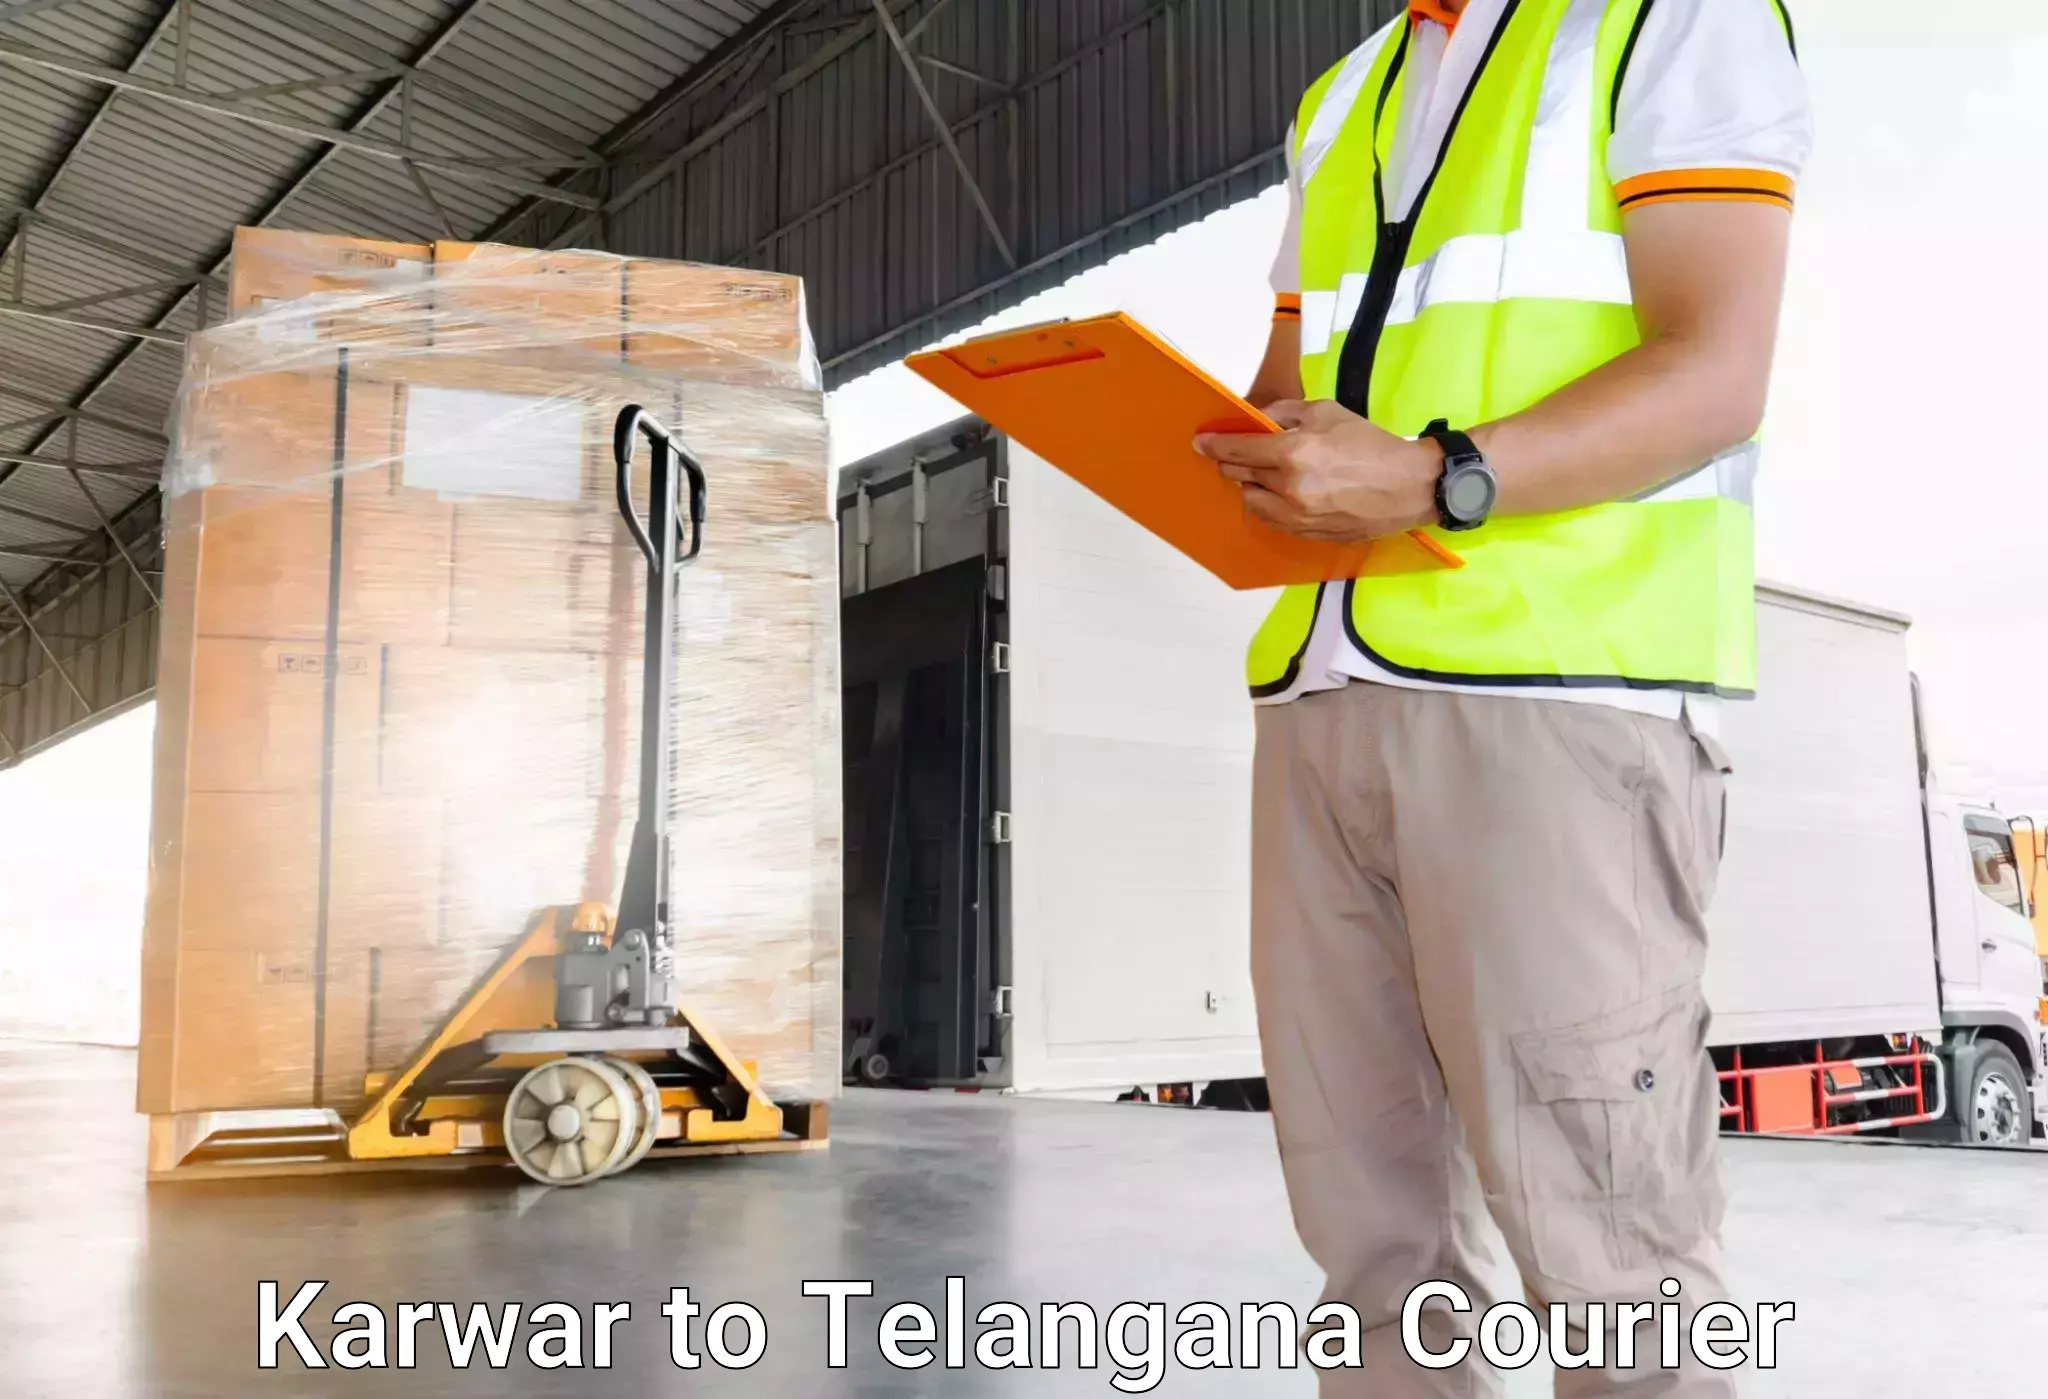 Luggage transport deals Karwar to Rudrangi